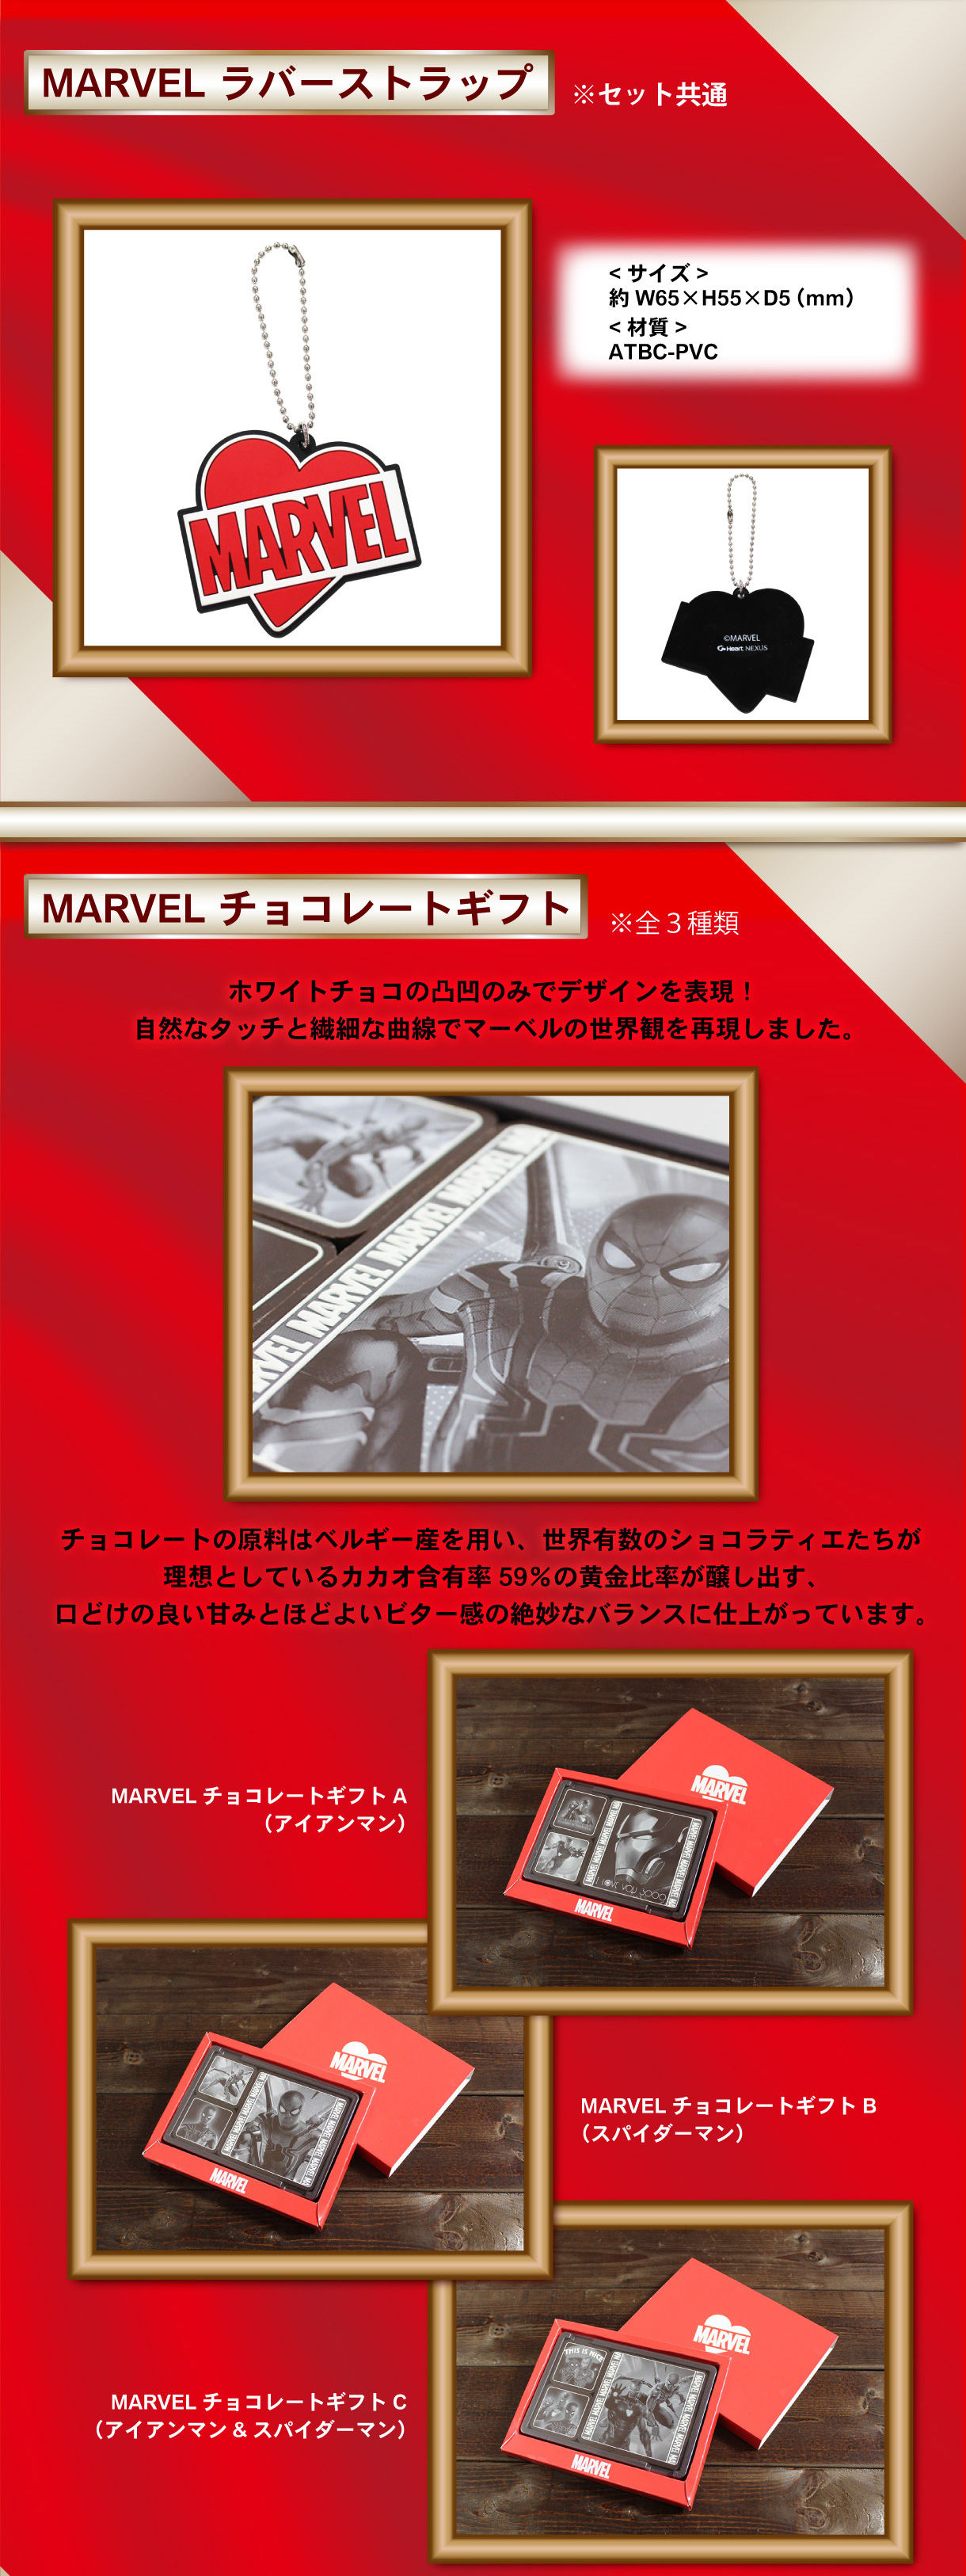 Marvelチョコレートギフトセット 全3種 アイアンマン 趣味 コレクション プレミアムバンダイ公式通販